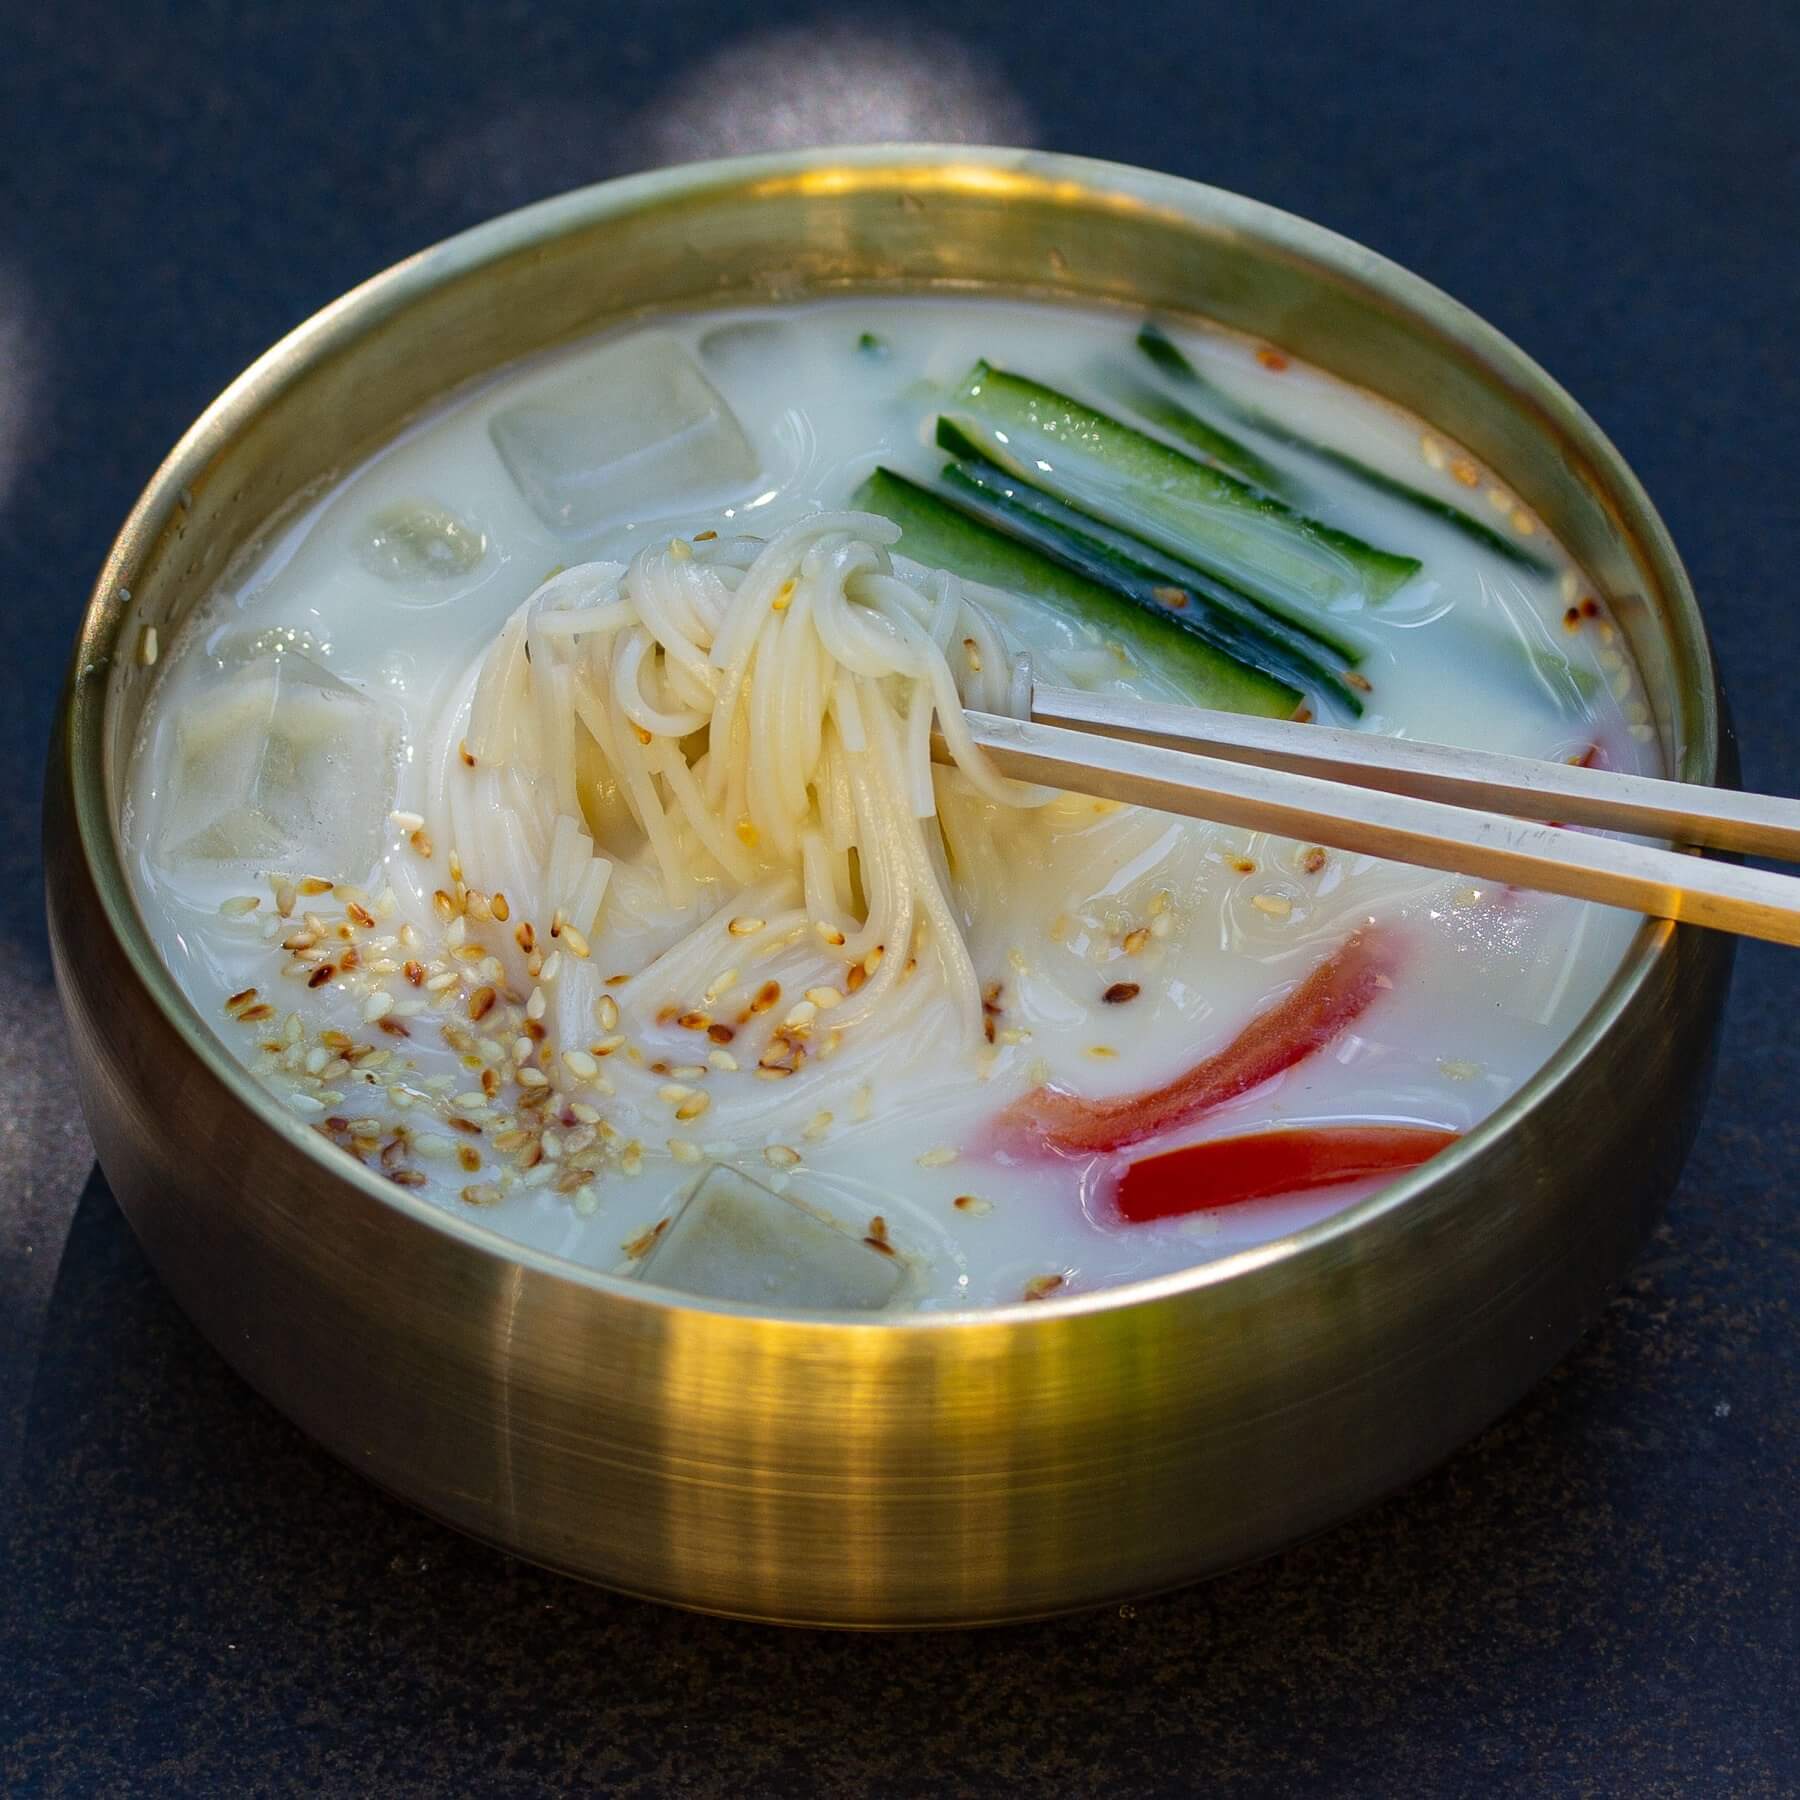 Erfrischende Sojamilch-Suppe aus Korea - Kong-Guksu